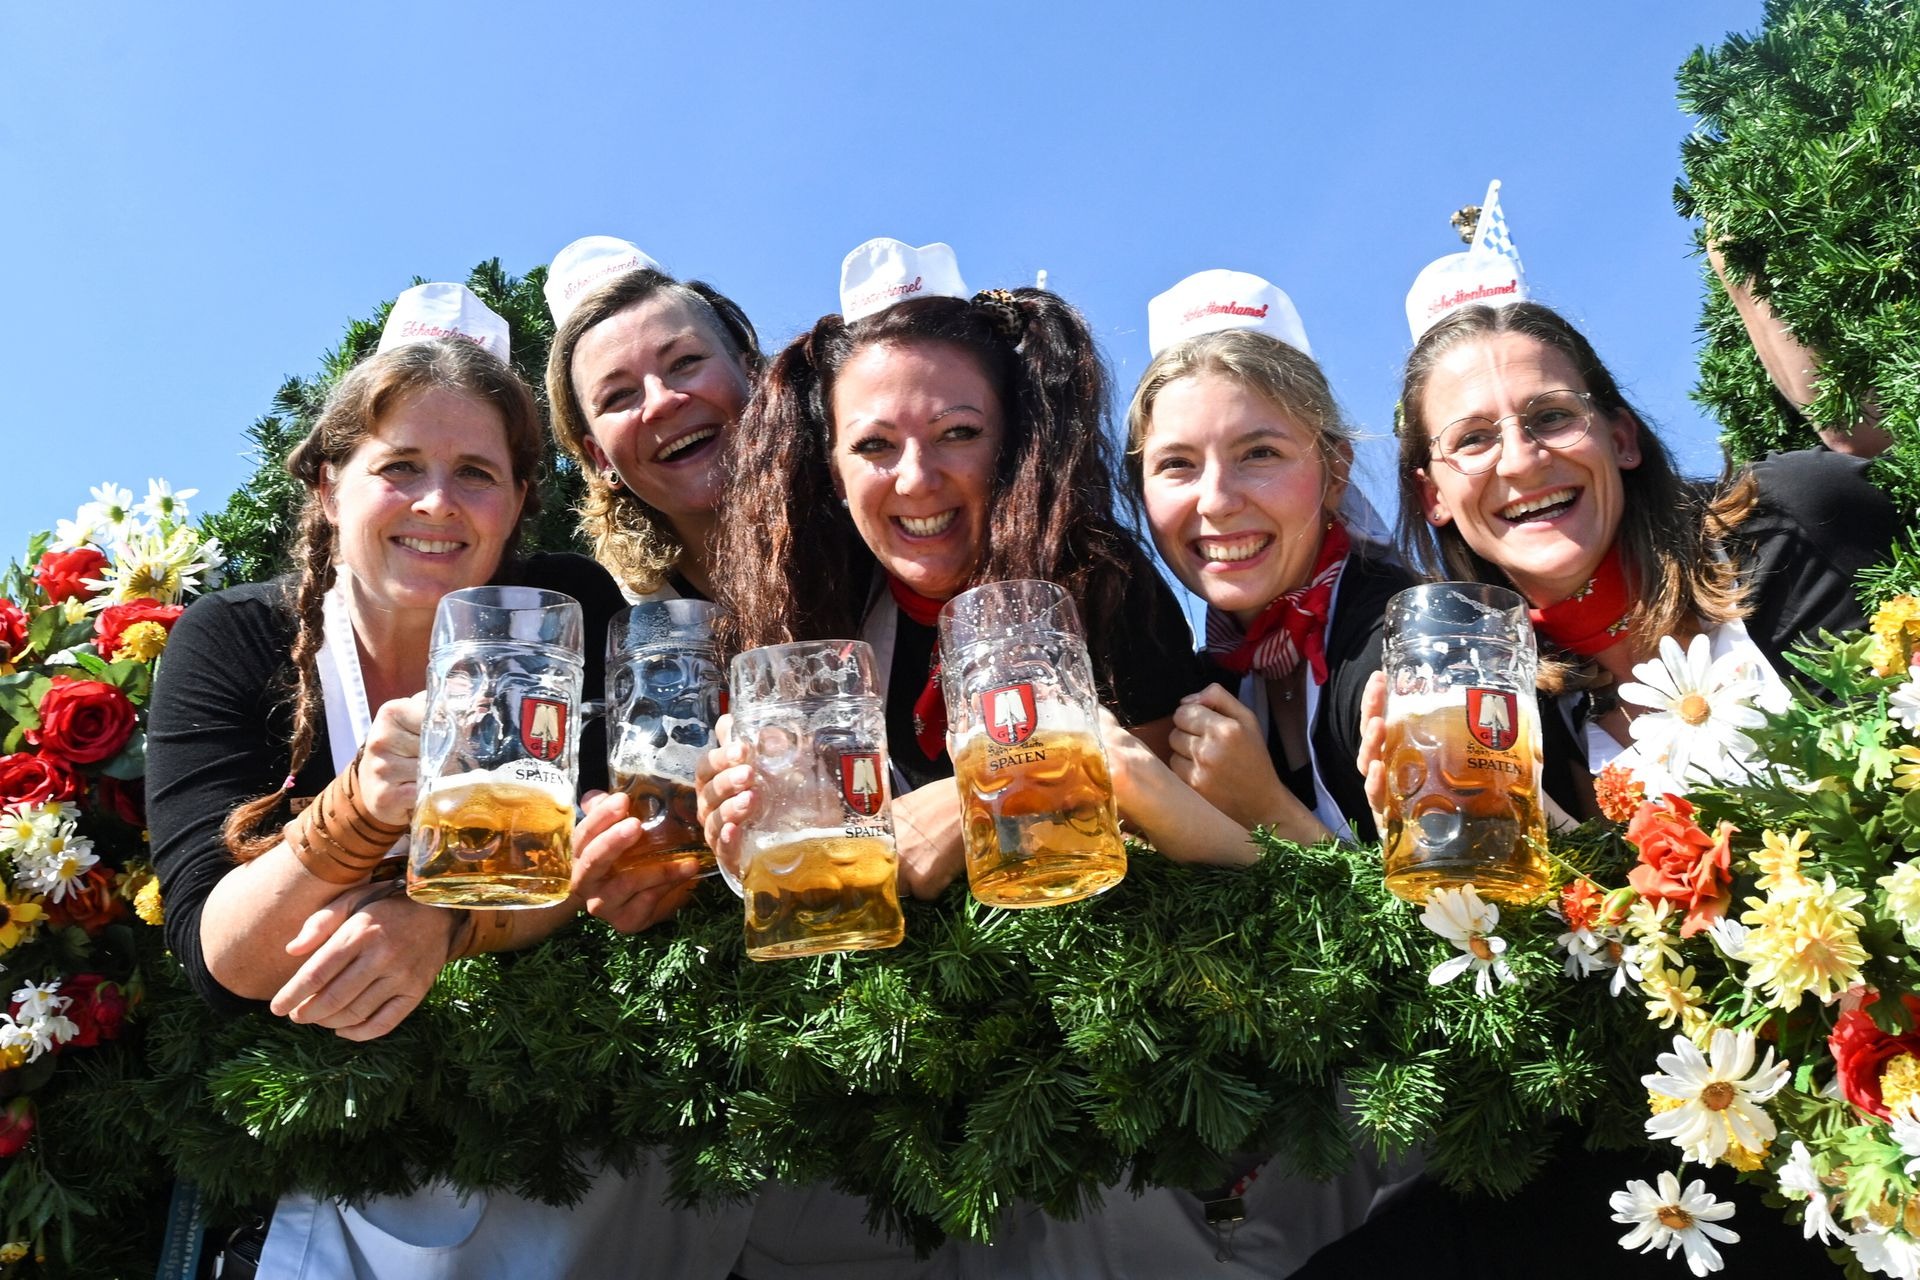 Lễ hội bia lớn nhất thế giới, có lịch sử hơn 200 năm chính thức bắt đầu - Ảnh 7.